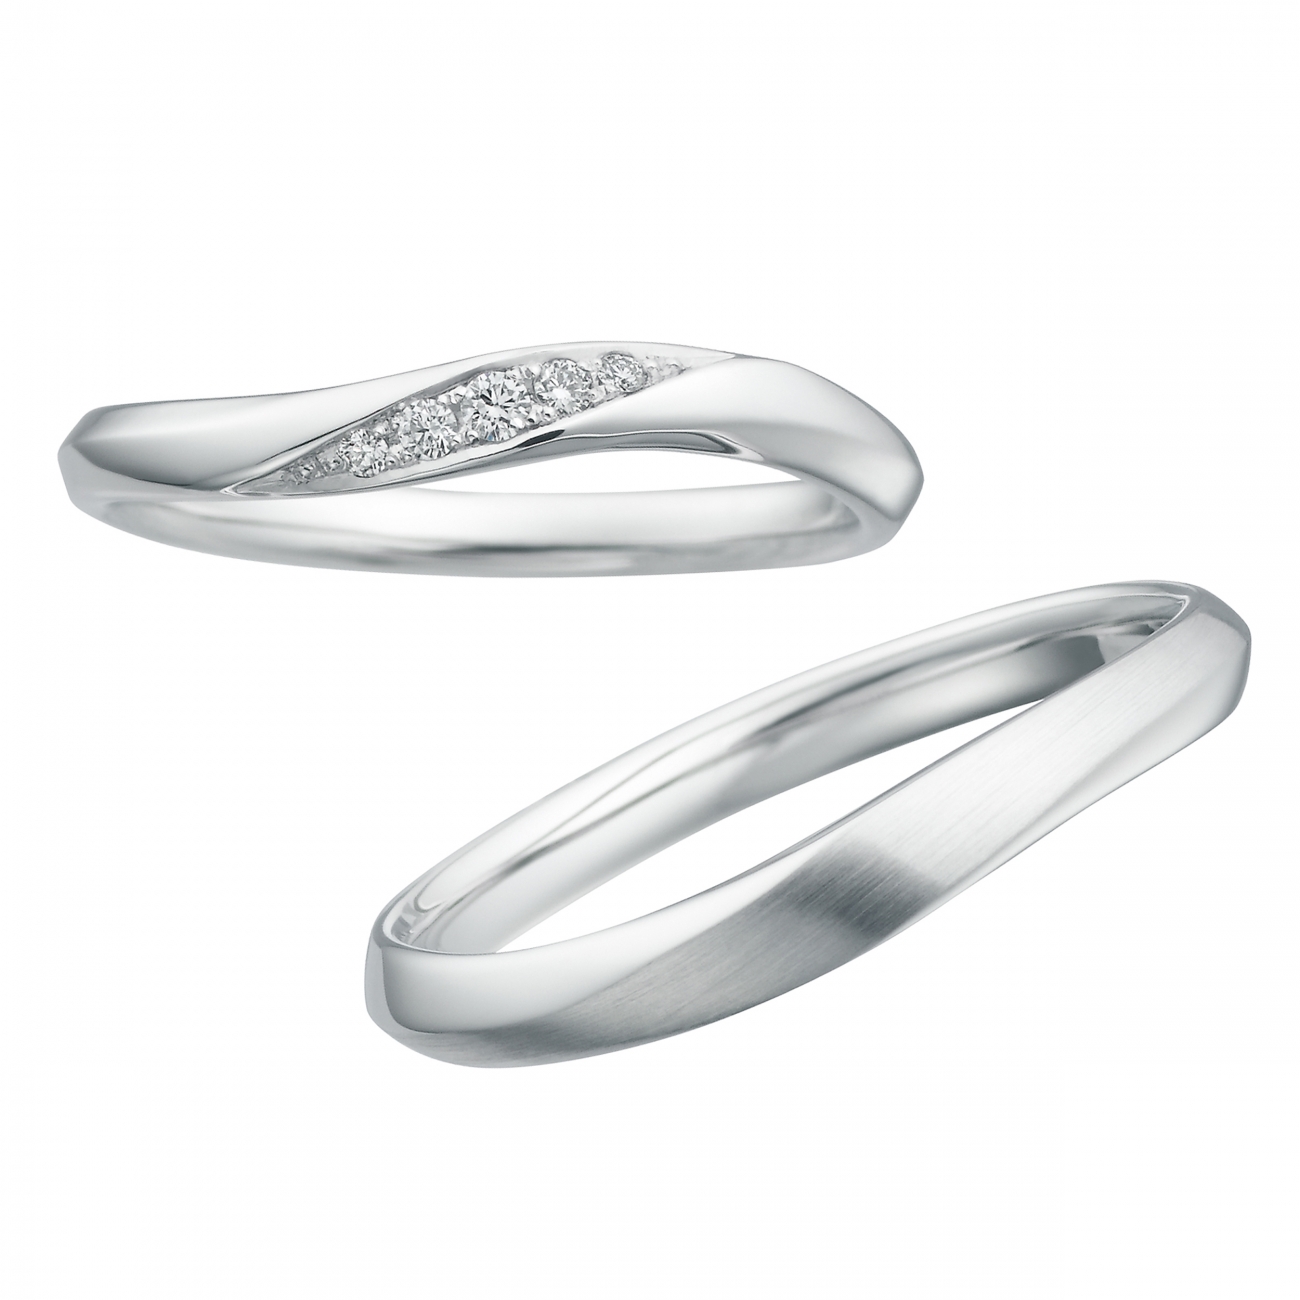 新潟結婚指輪人気ブランド鍛造サムシングブルーおすすめプラチナリング